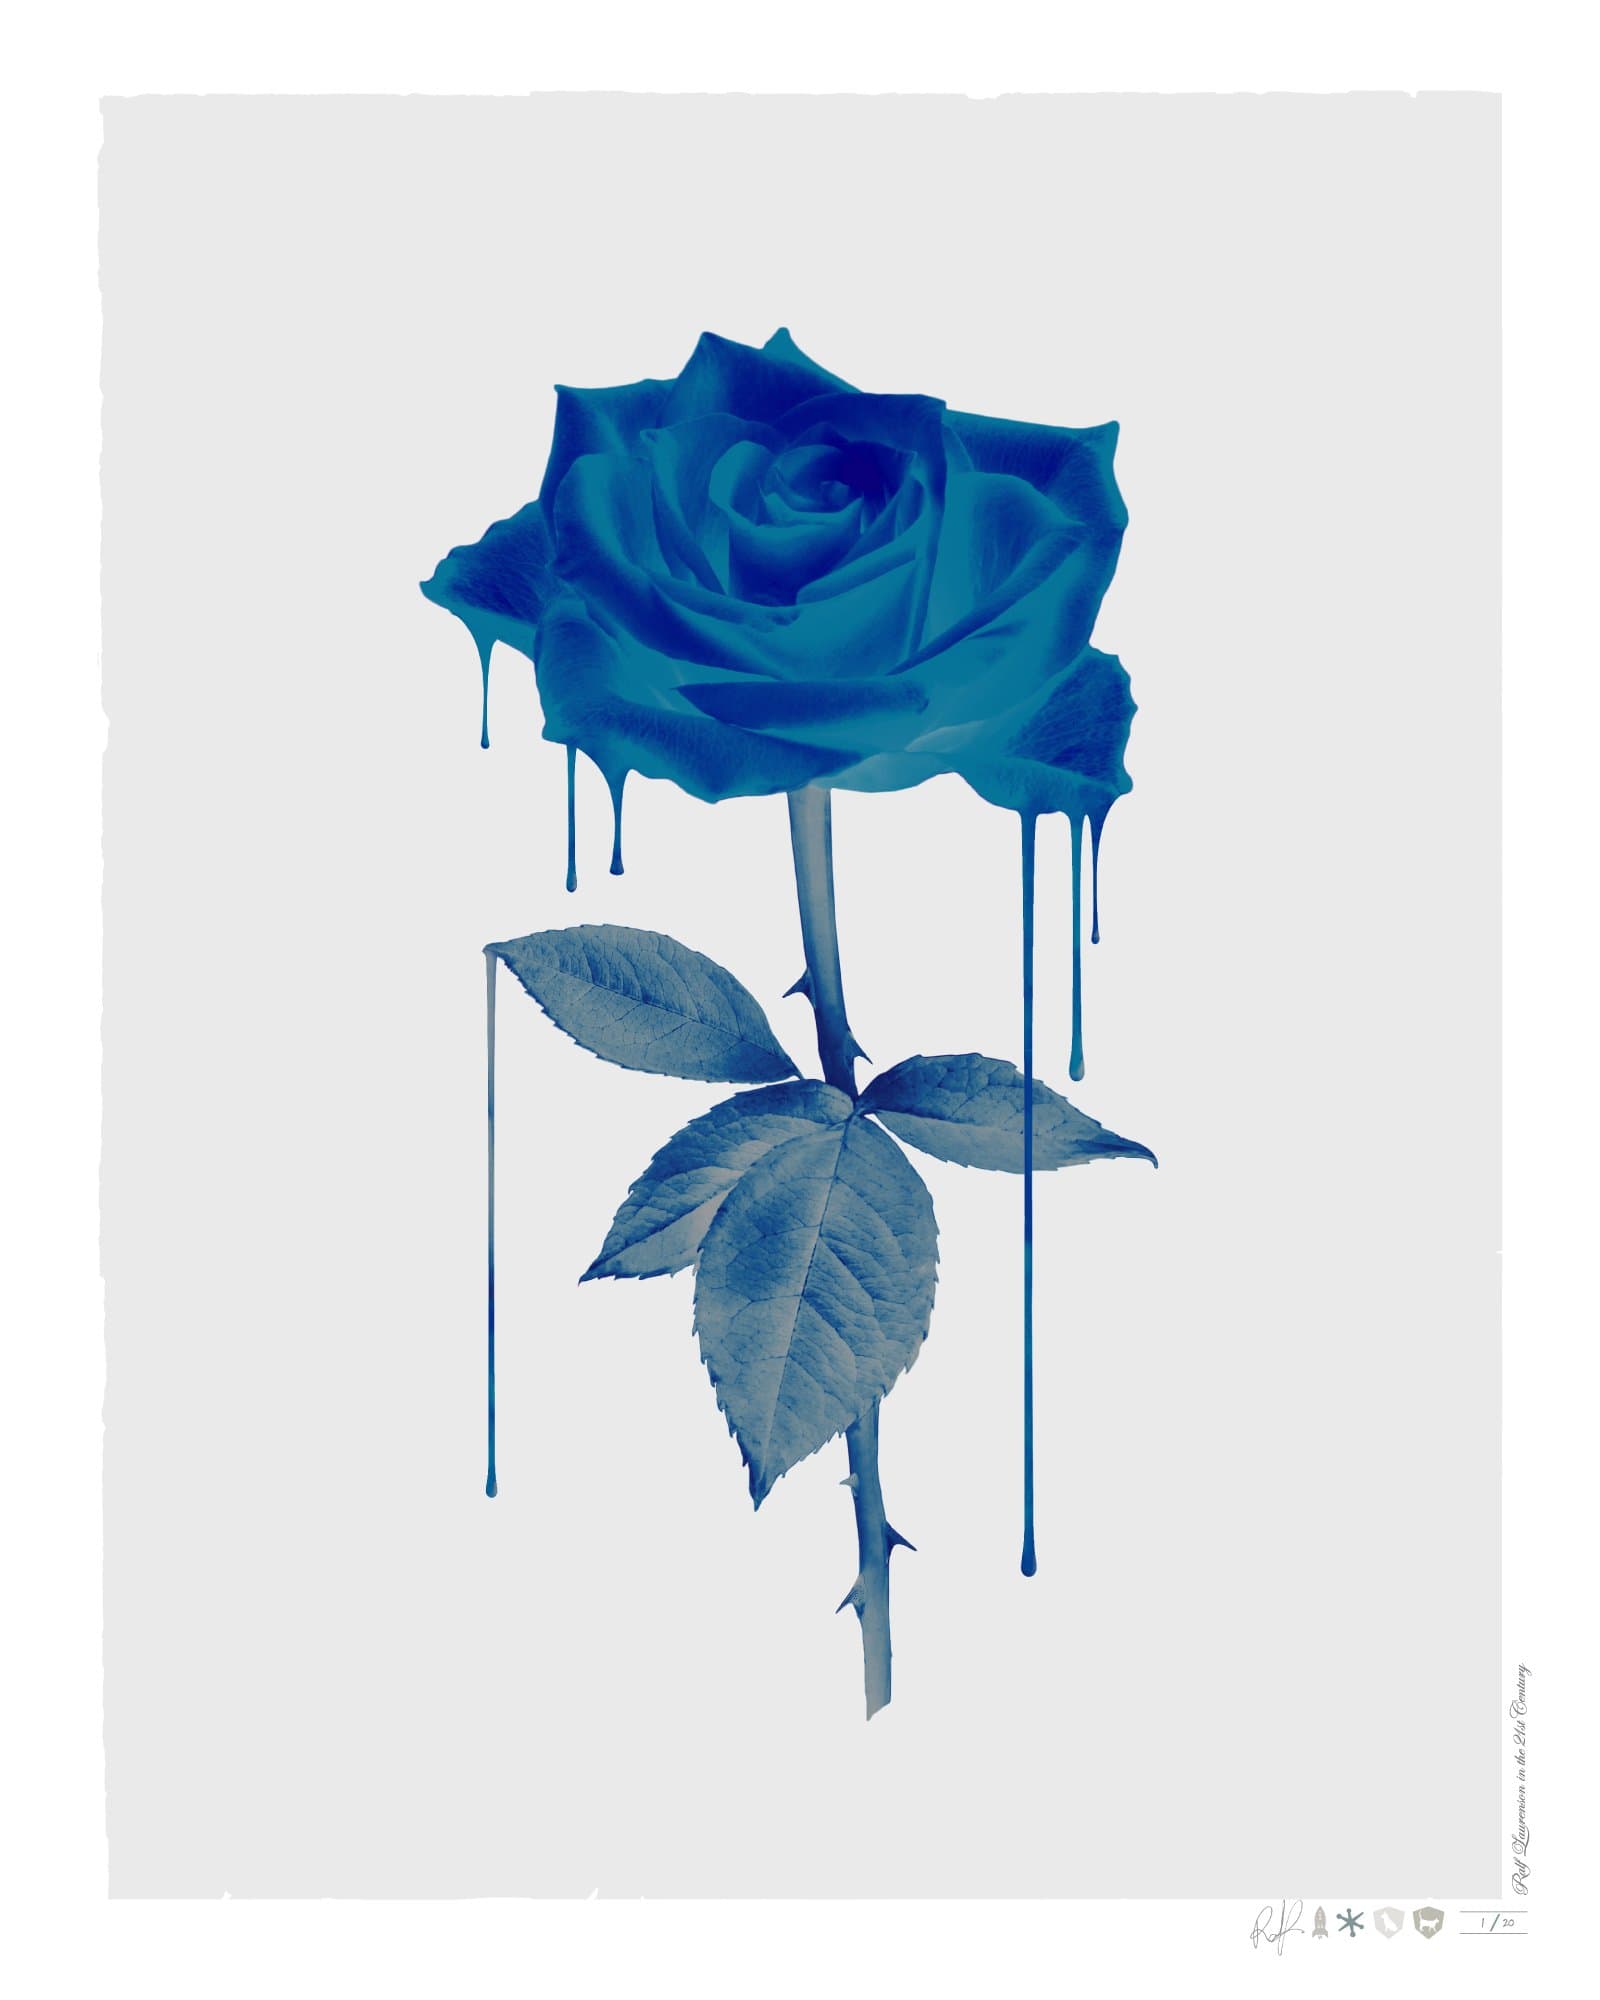 Melting Blue Rose Enlarged